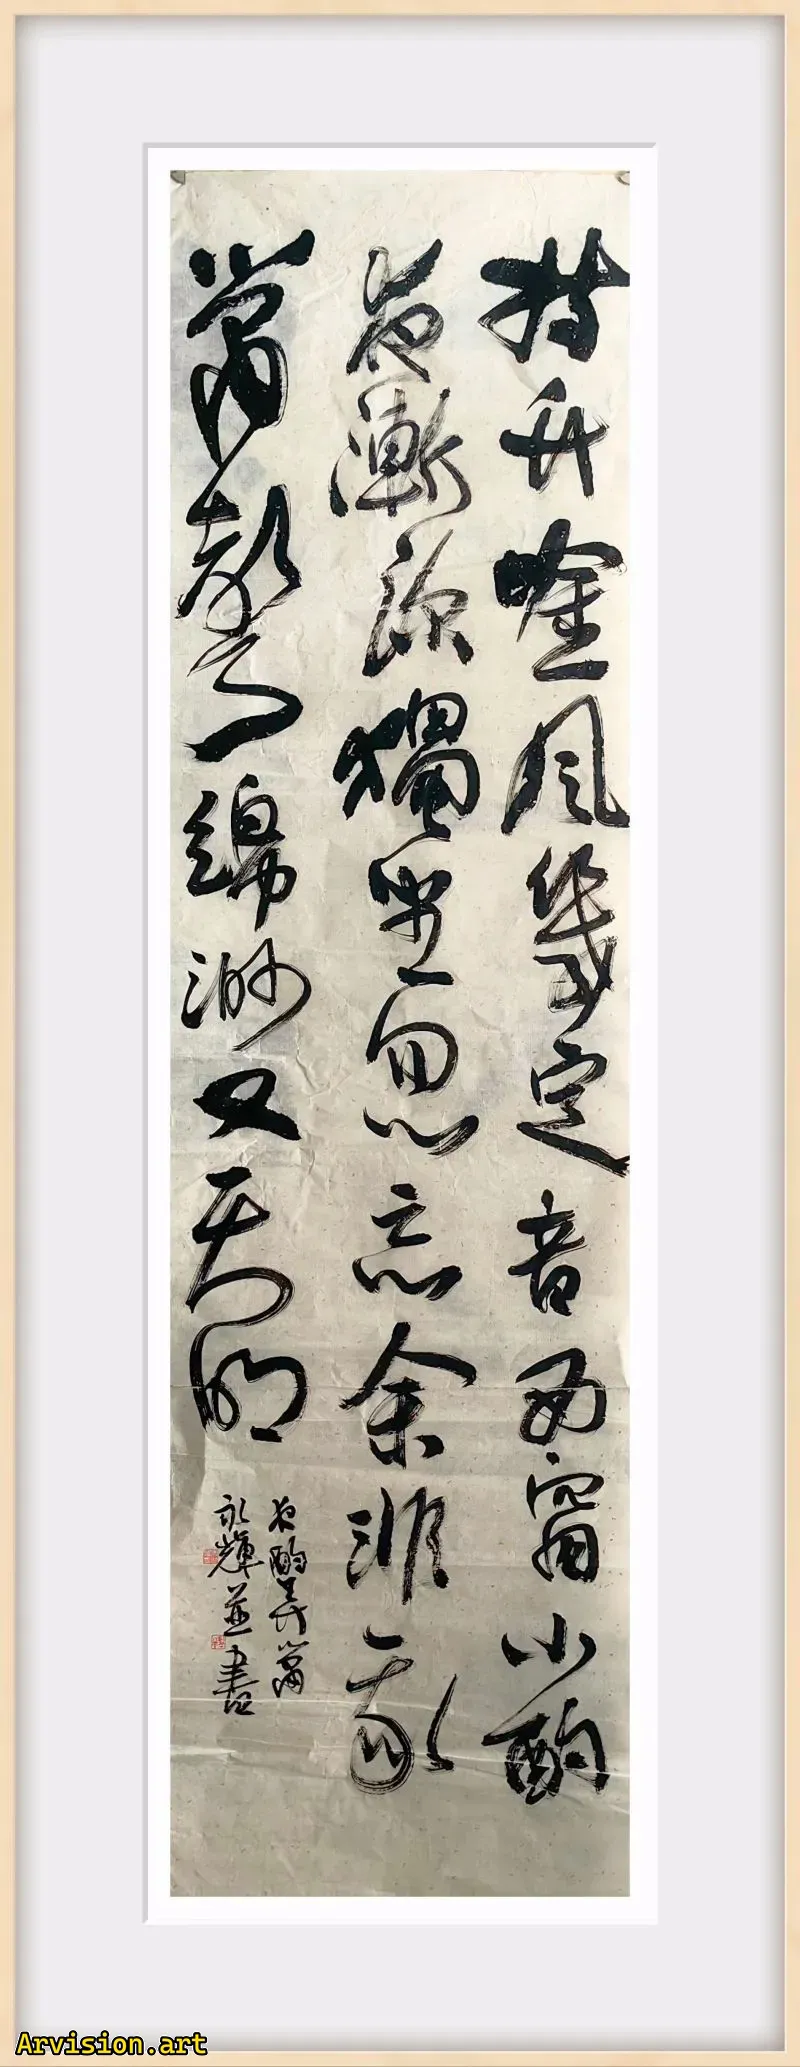 Song Yonghui calligraphie travail avec des sons de bambou